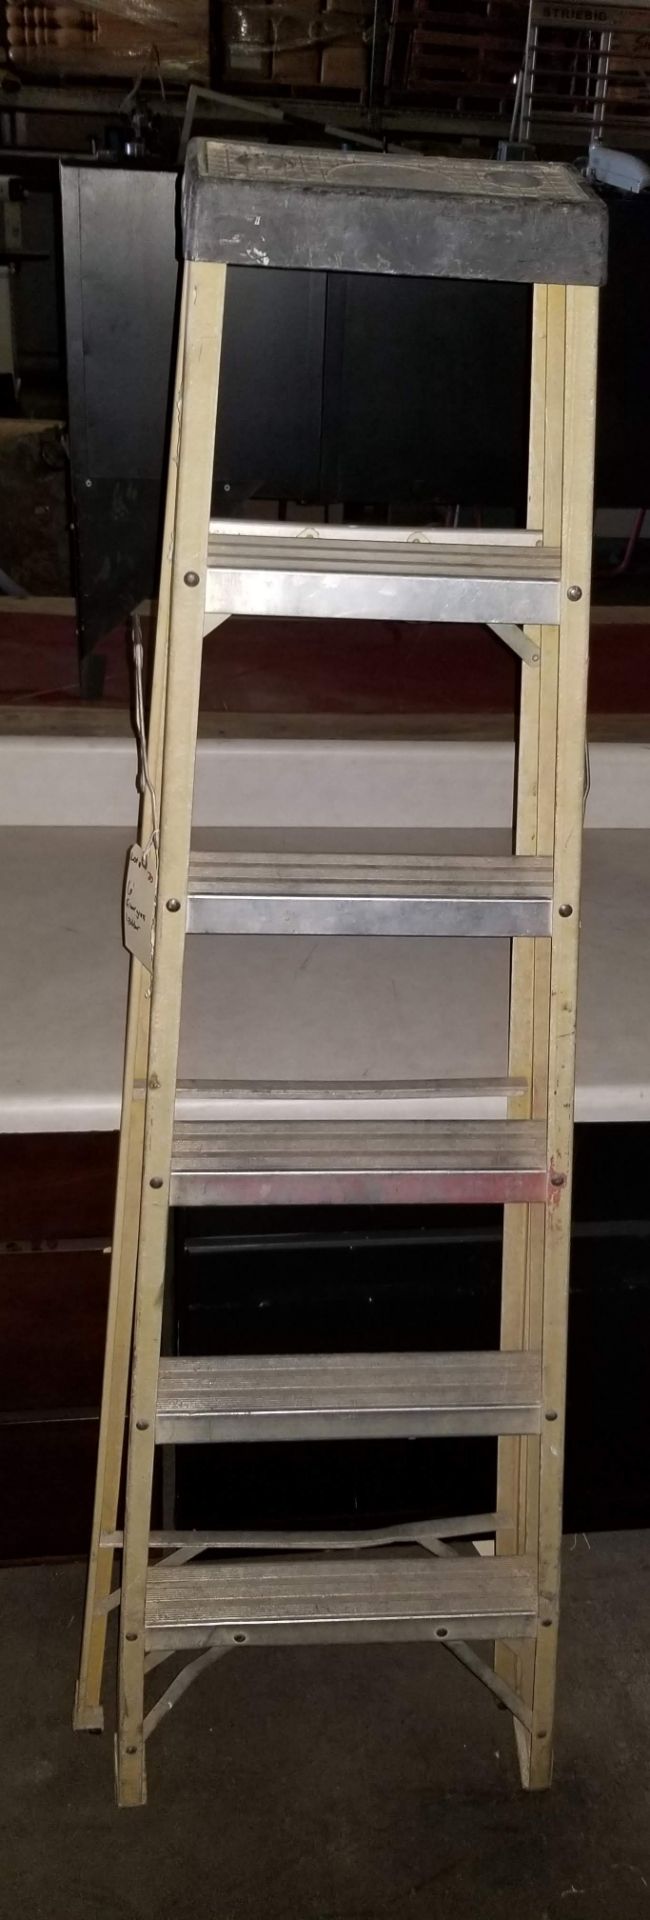 6' Fiber Glass Ladder - Image 2 of 3